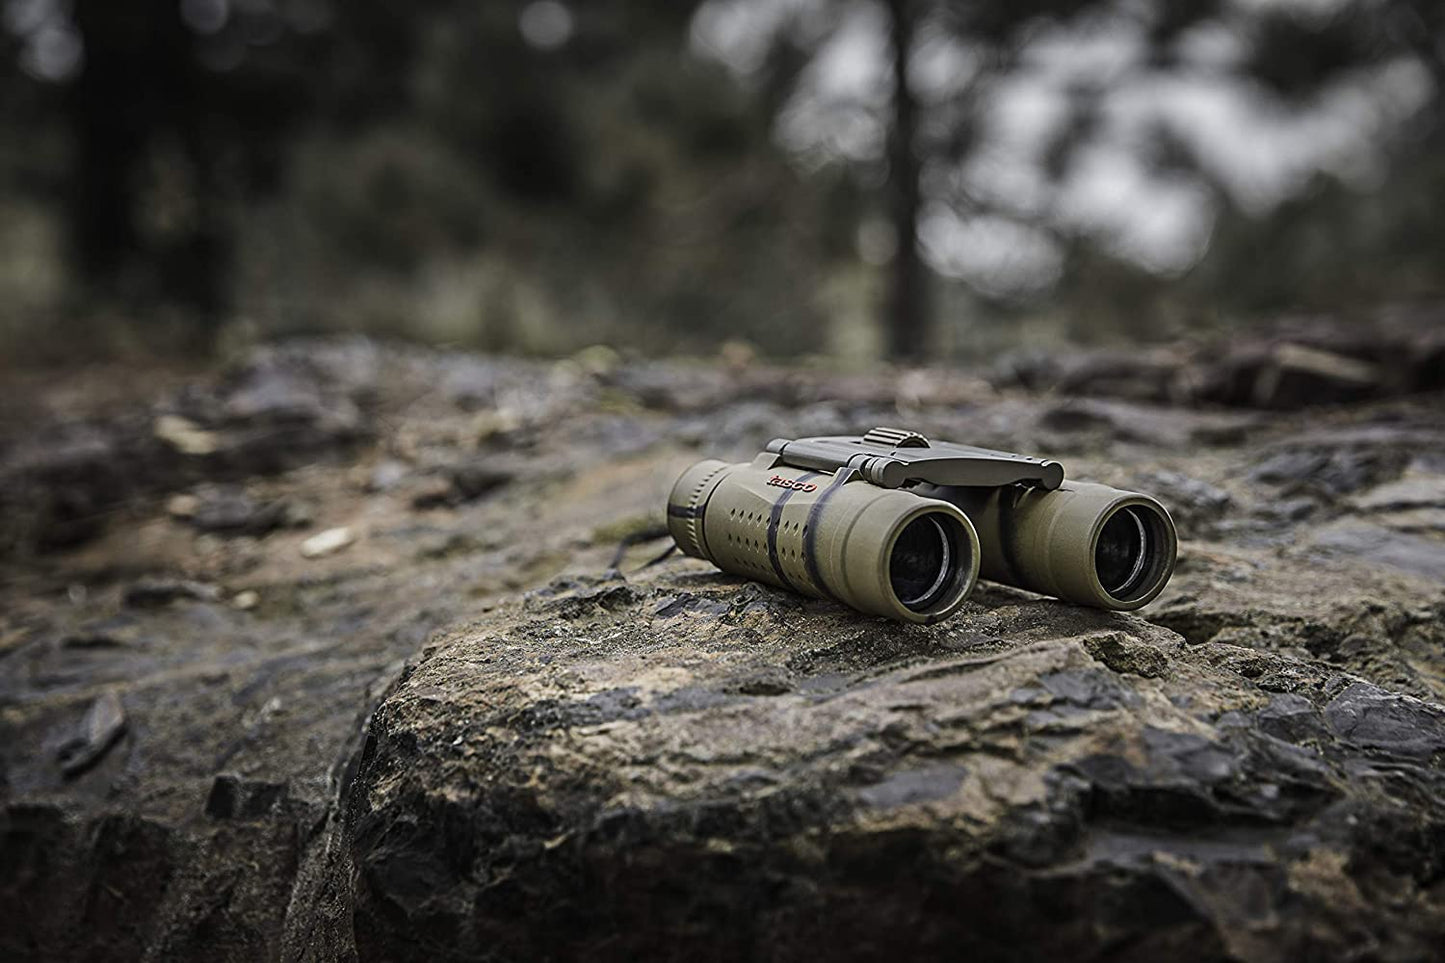 Tasco Essentials Roof Prism Roof MC Box Binoculars, 10 x 25mm, Brown Camo, Model:168125B - BH168125B